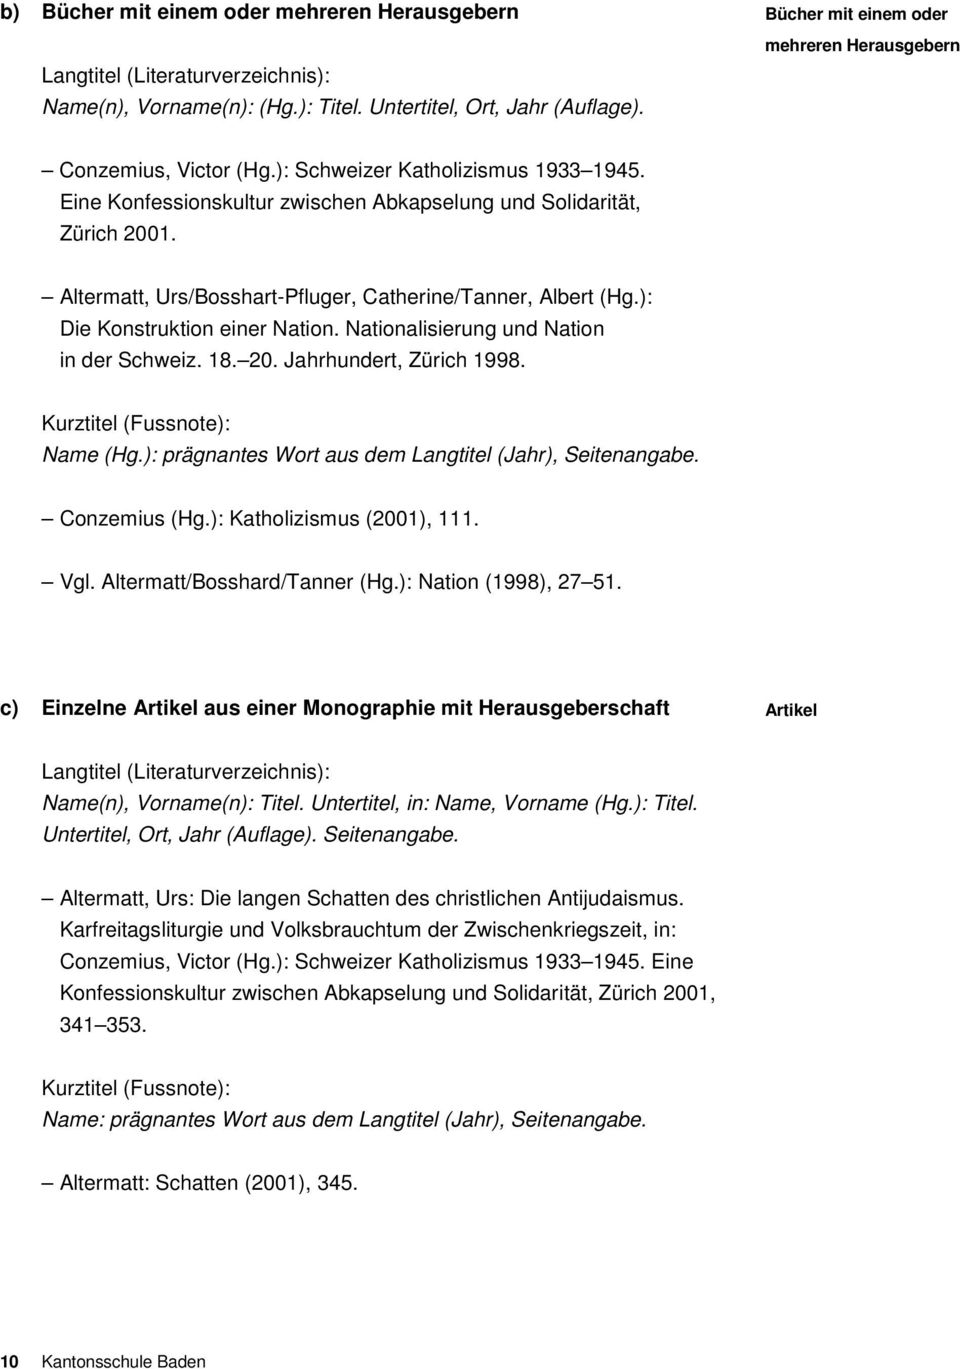 Altermatt, Urs/Bosshart-Pfluger, Catherine/Tanner, Albert (Hg.): Die Konstruktion einer Nation. Nationalisierung und Nation in der Schweiz. 18. 20. Jahrhundert, Zürich 1998.